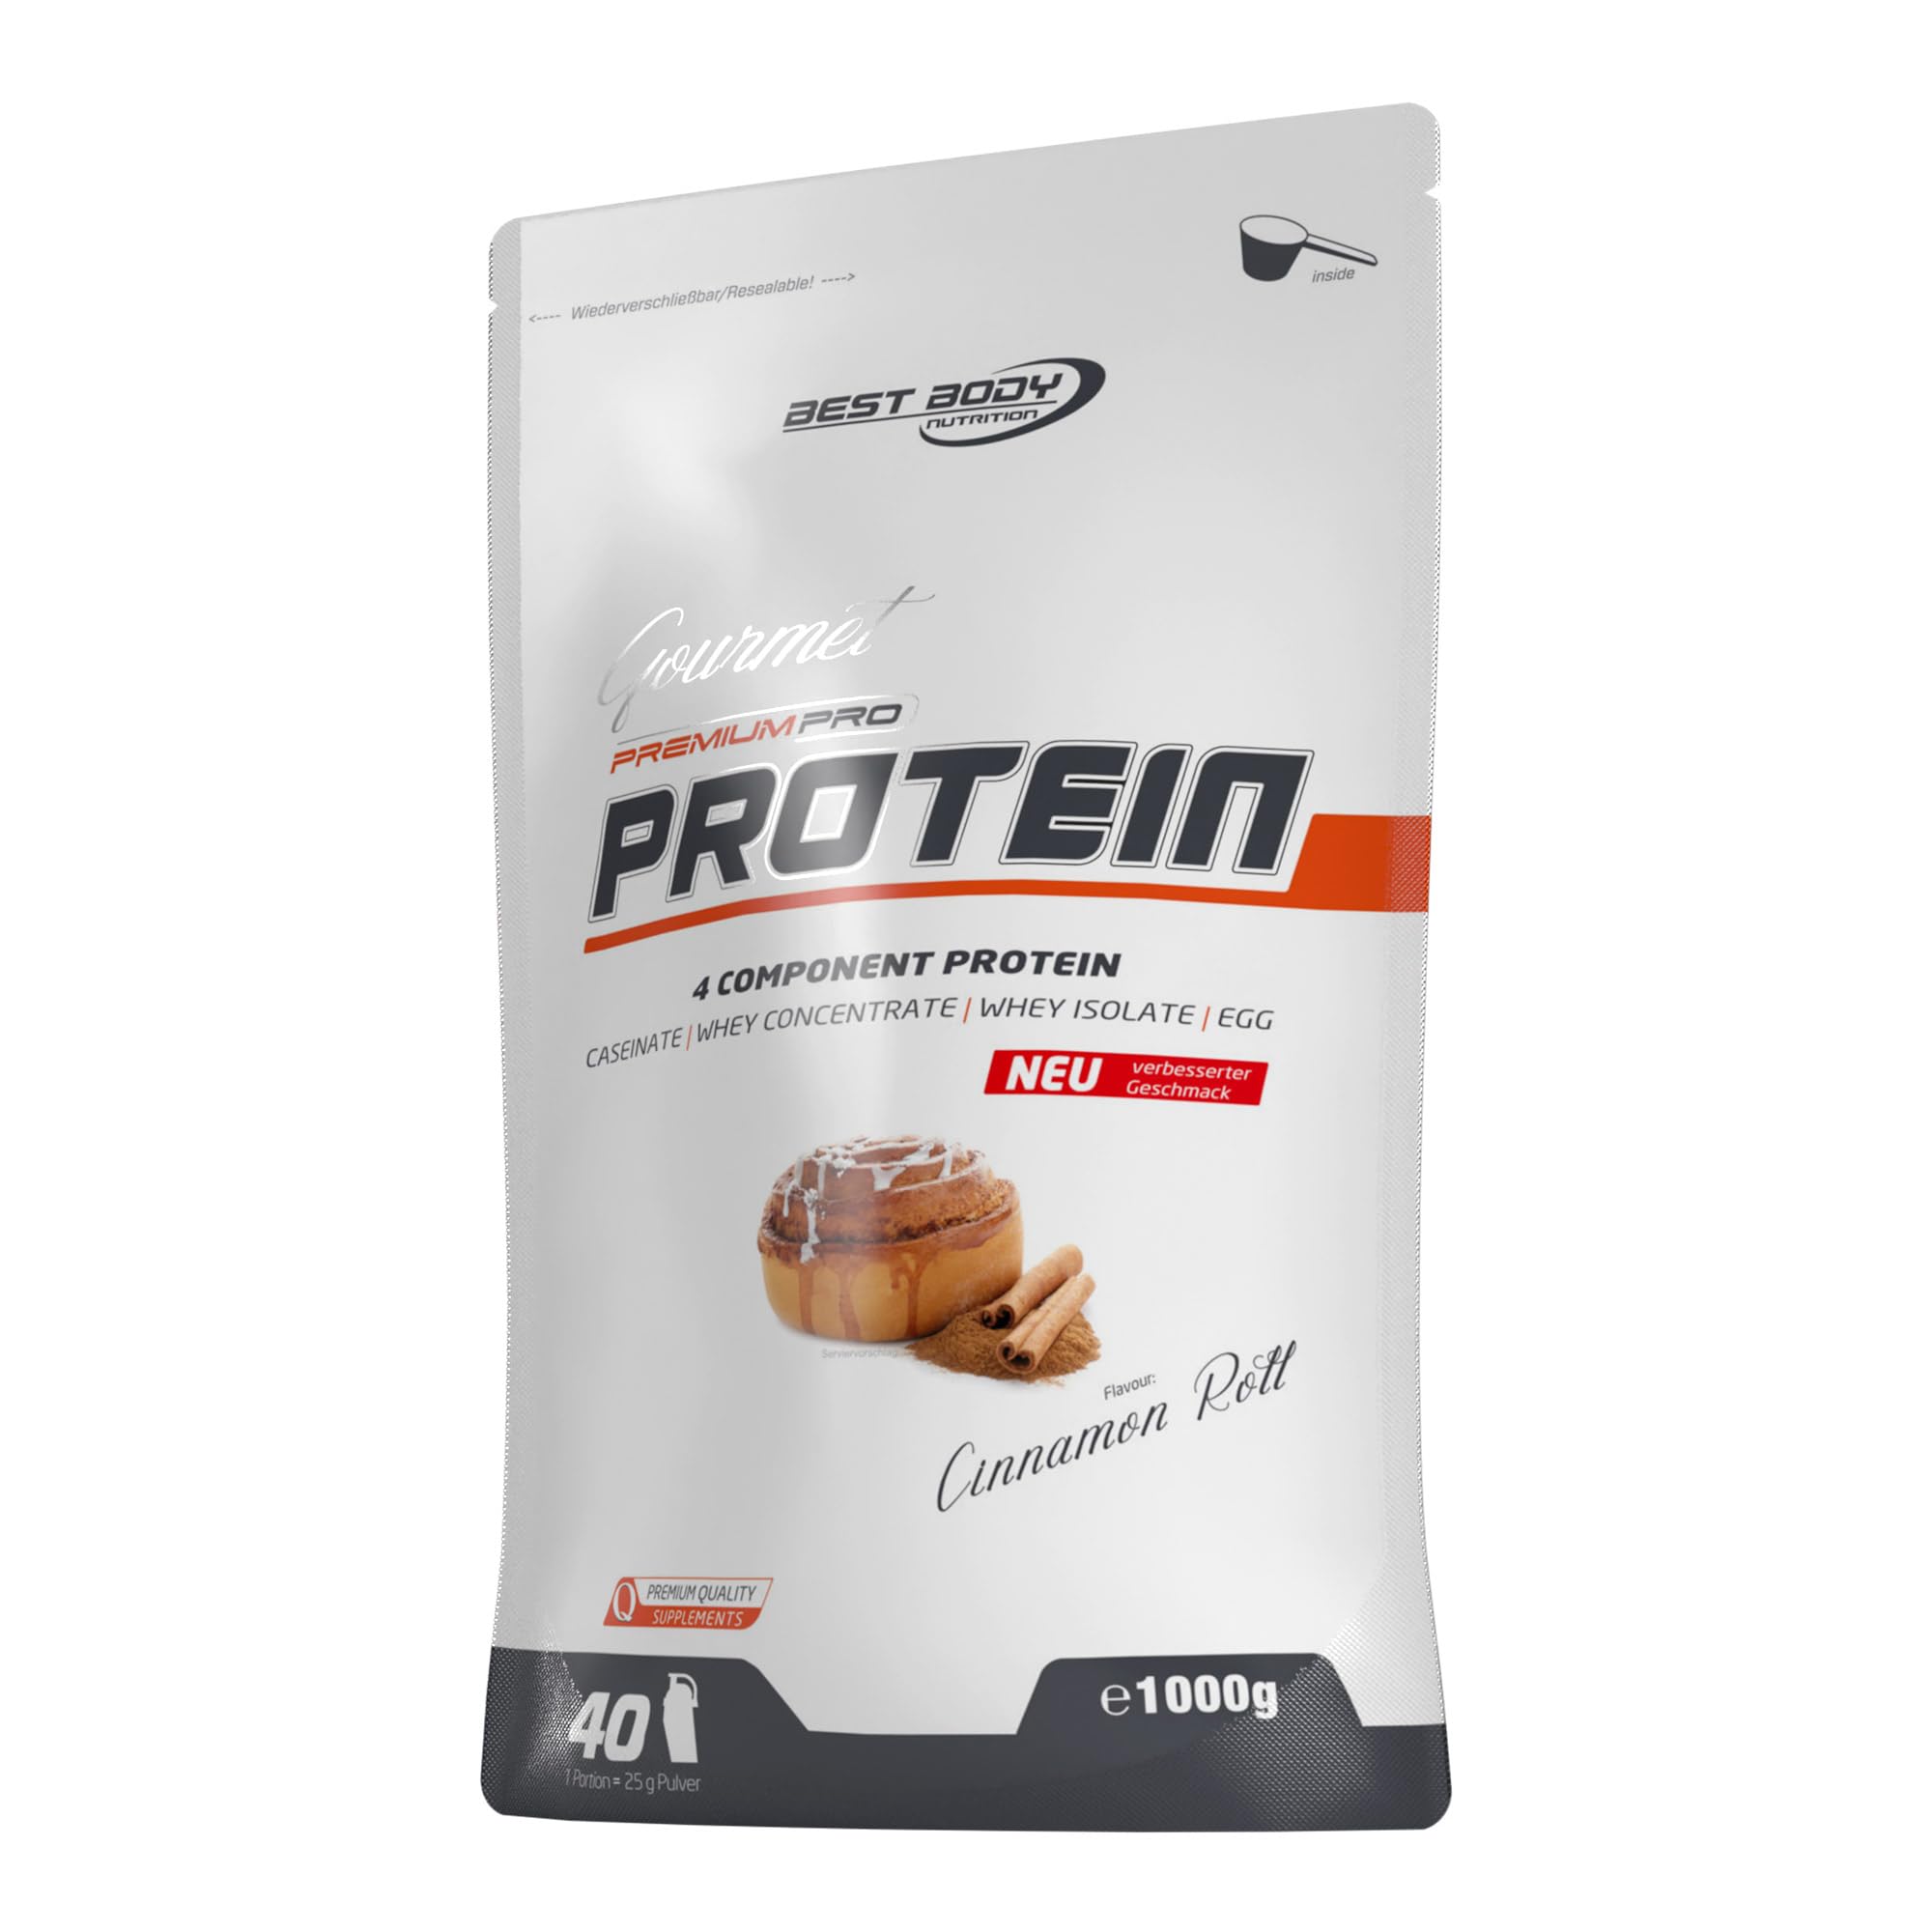 Best Body Nutrition Gourmet Premium Pro Protein, Cinnamon Roll, 4 Komponenten Protein Shake: Caseinat, Whey Konzentrat, Whey Isolat, Eiprotein, 1 kg Zipp Beutel